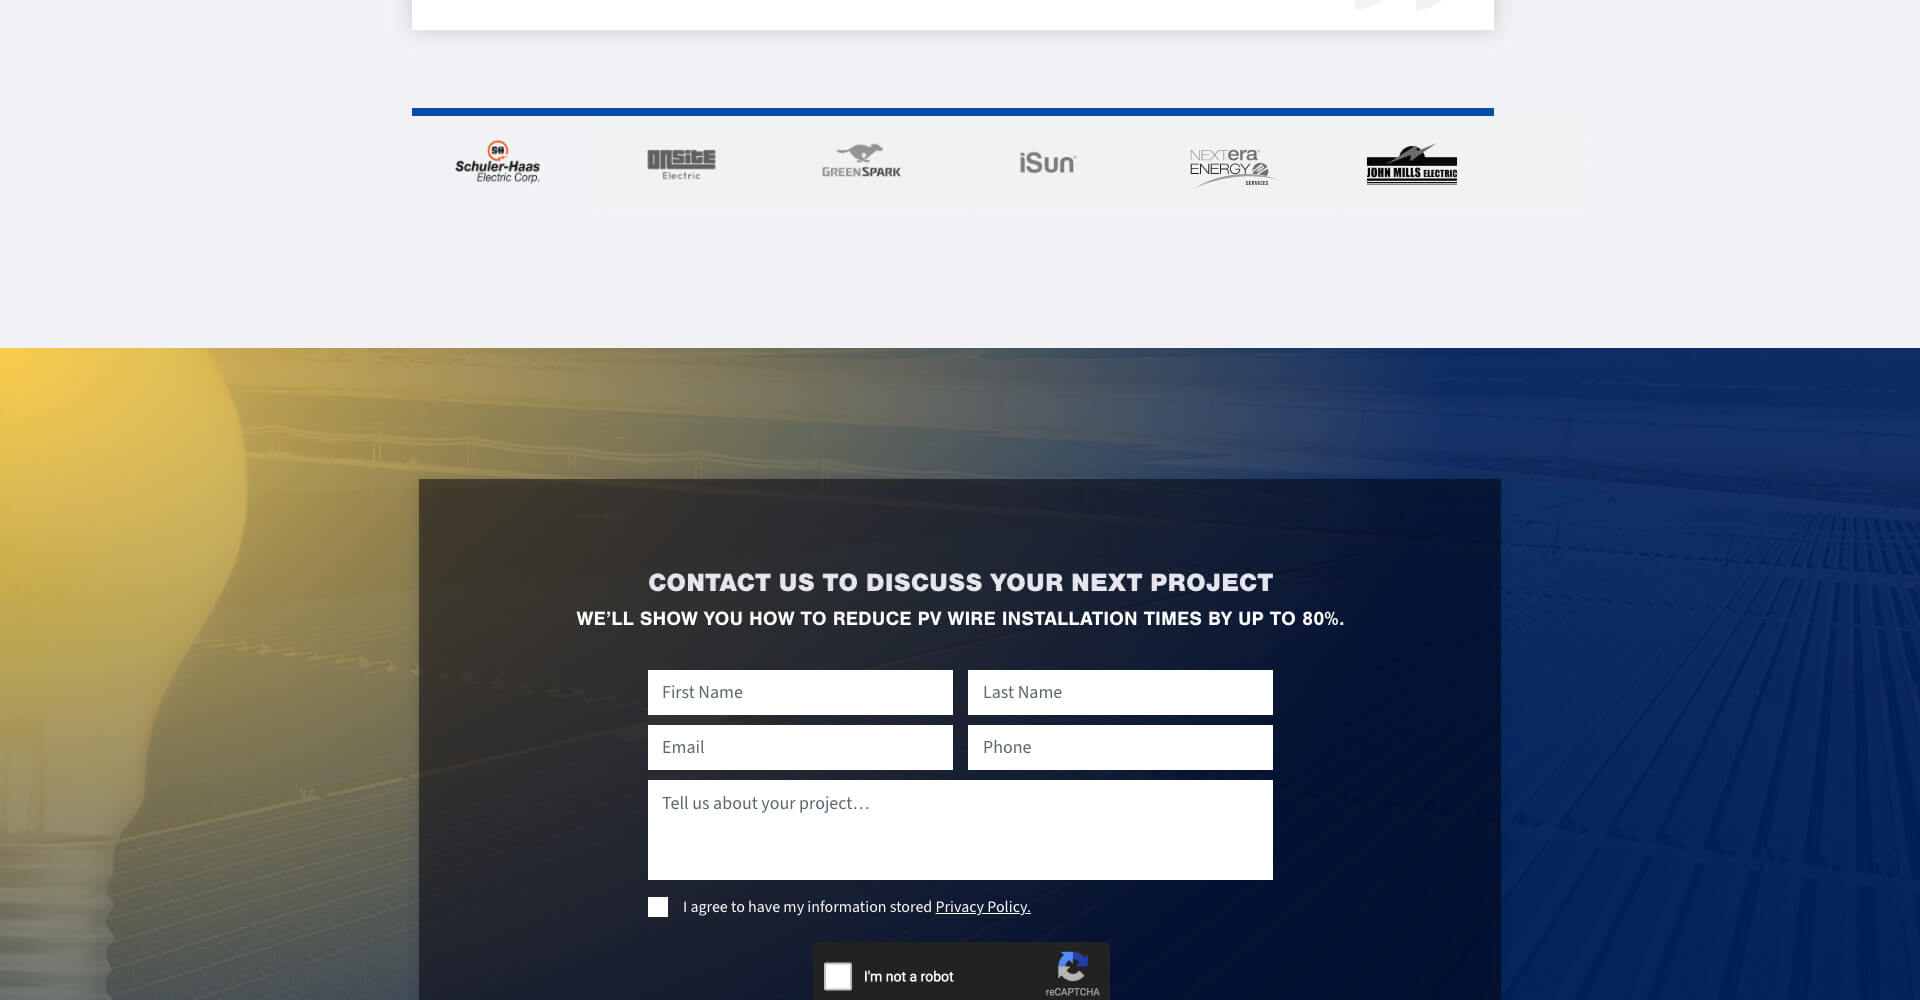 Homepage screenshot of SunPull